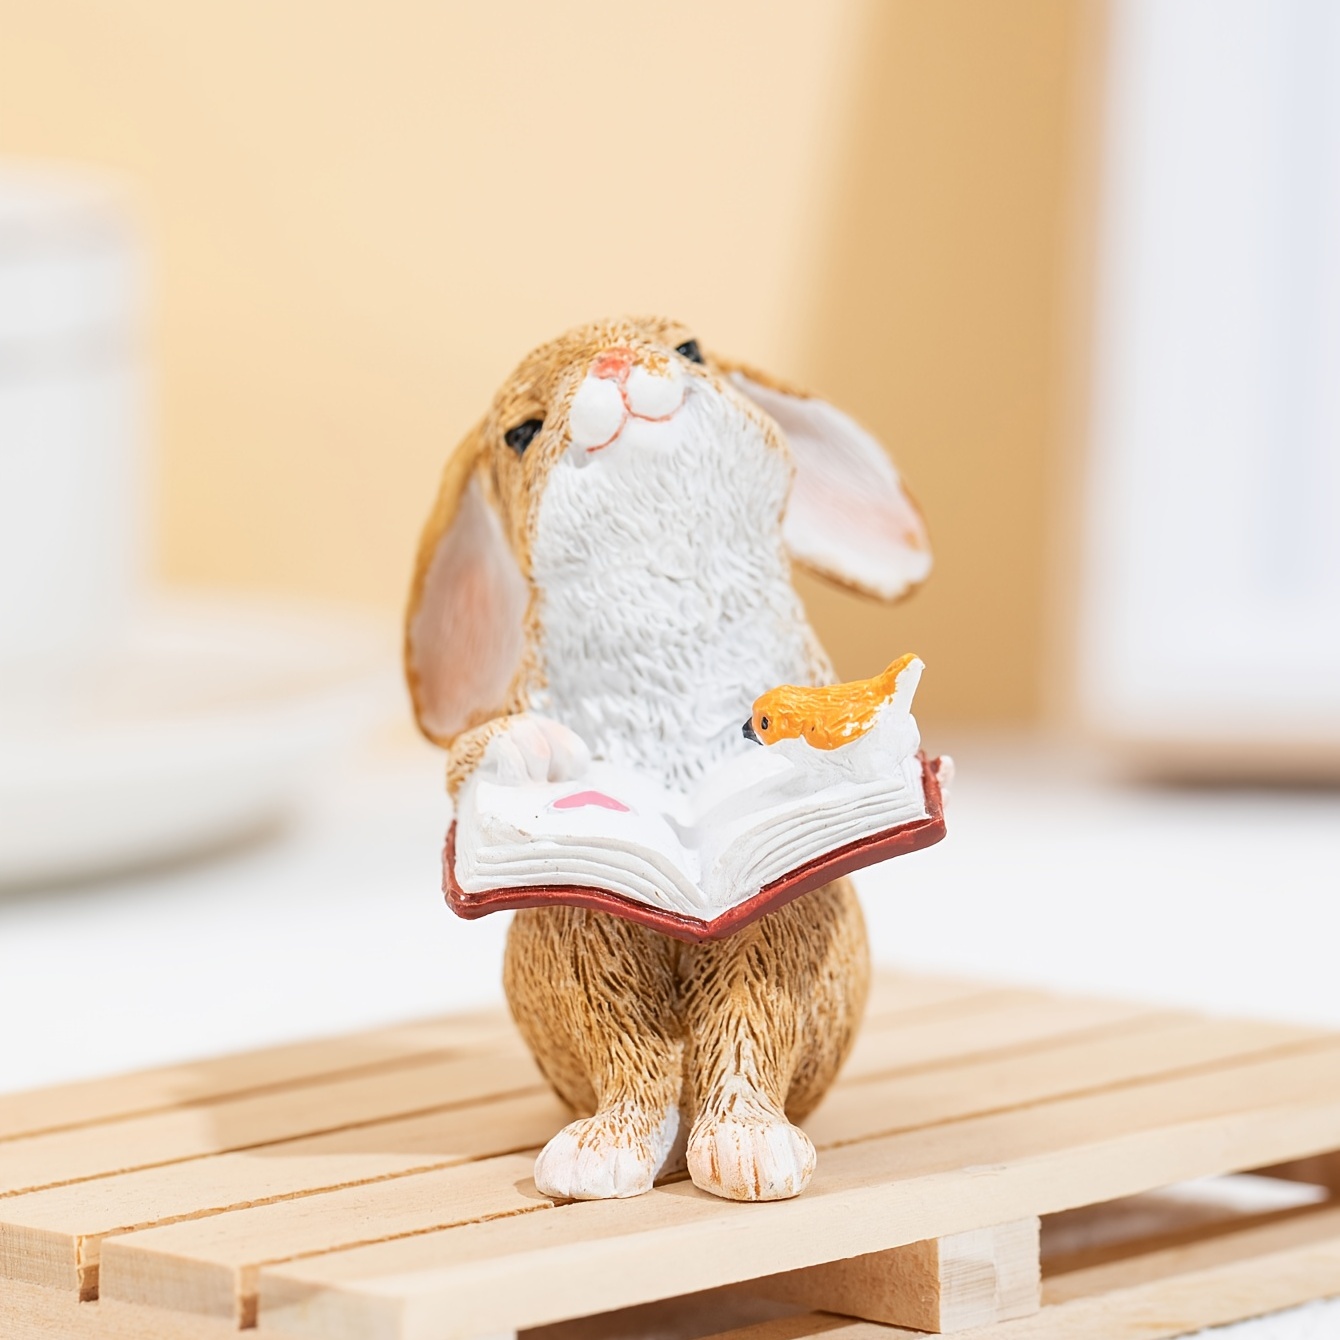 bunny reading a book